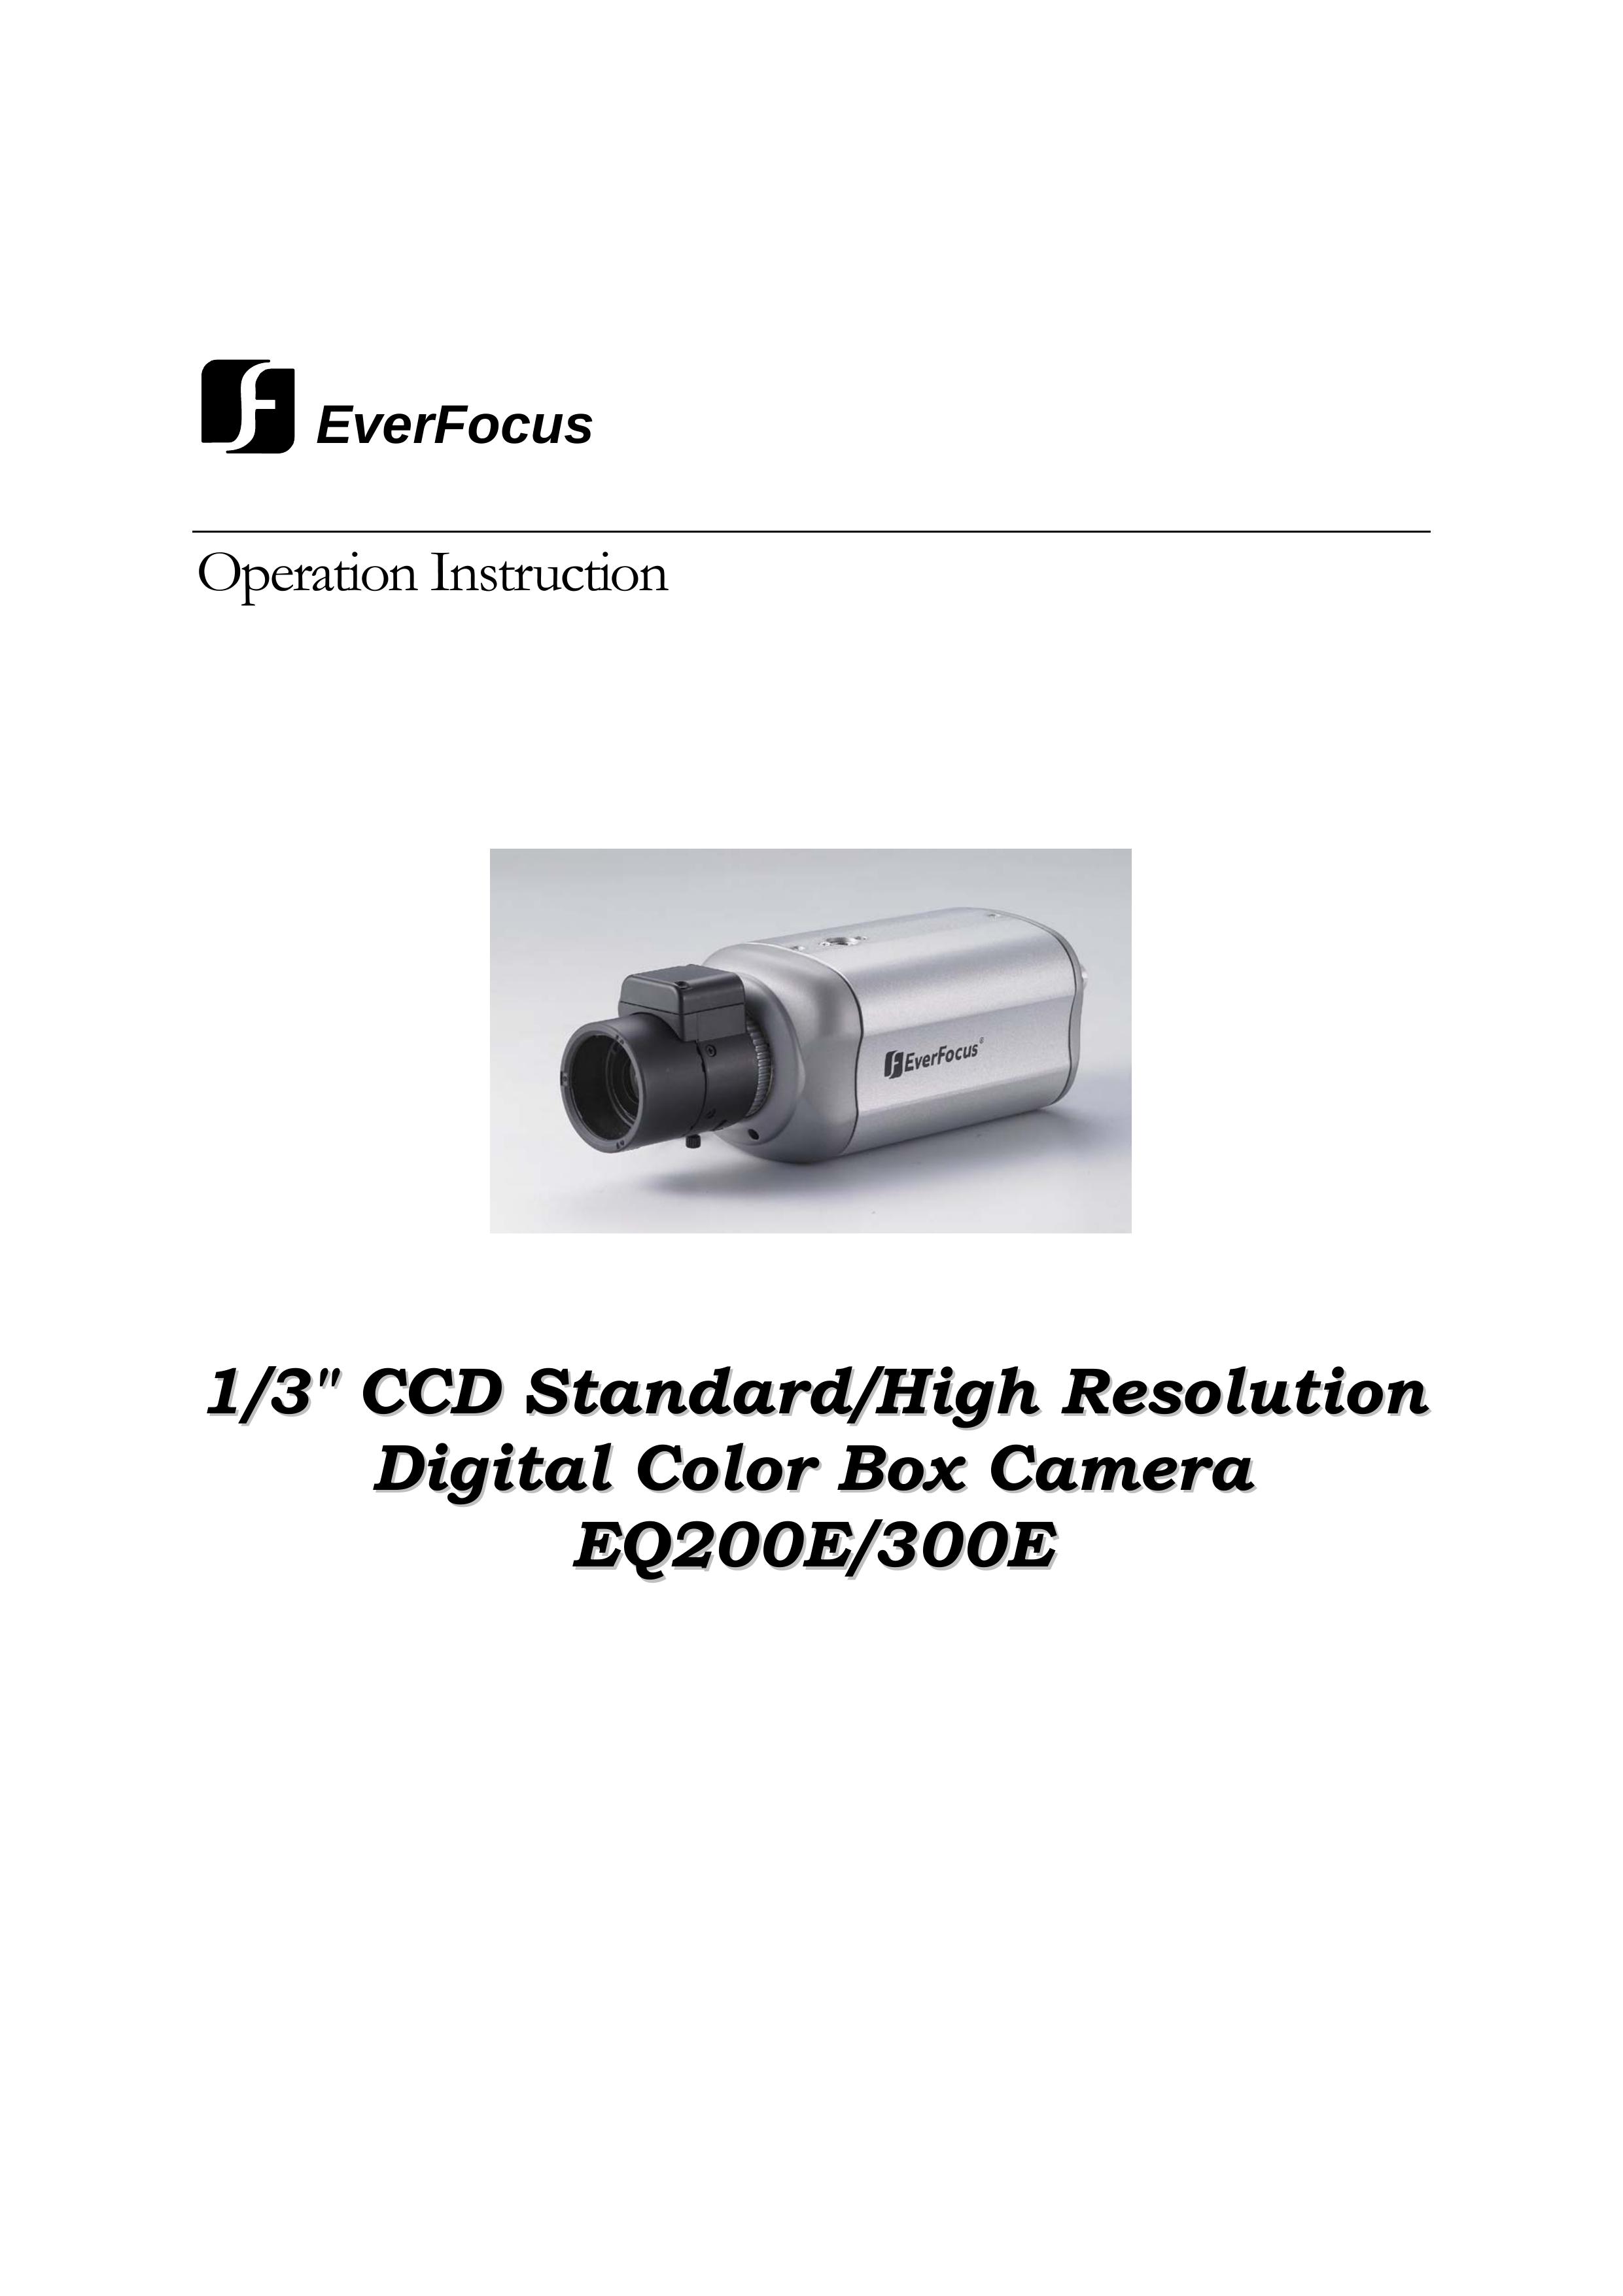 EverFocus EQ300E Digital Camera User Manual